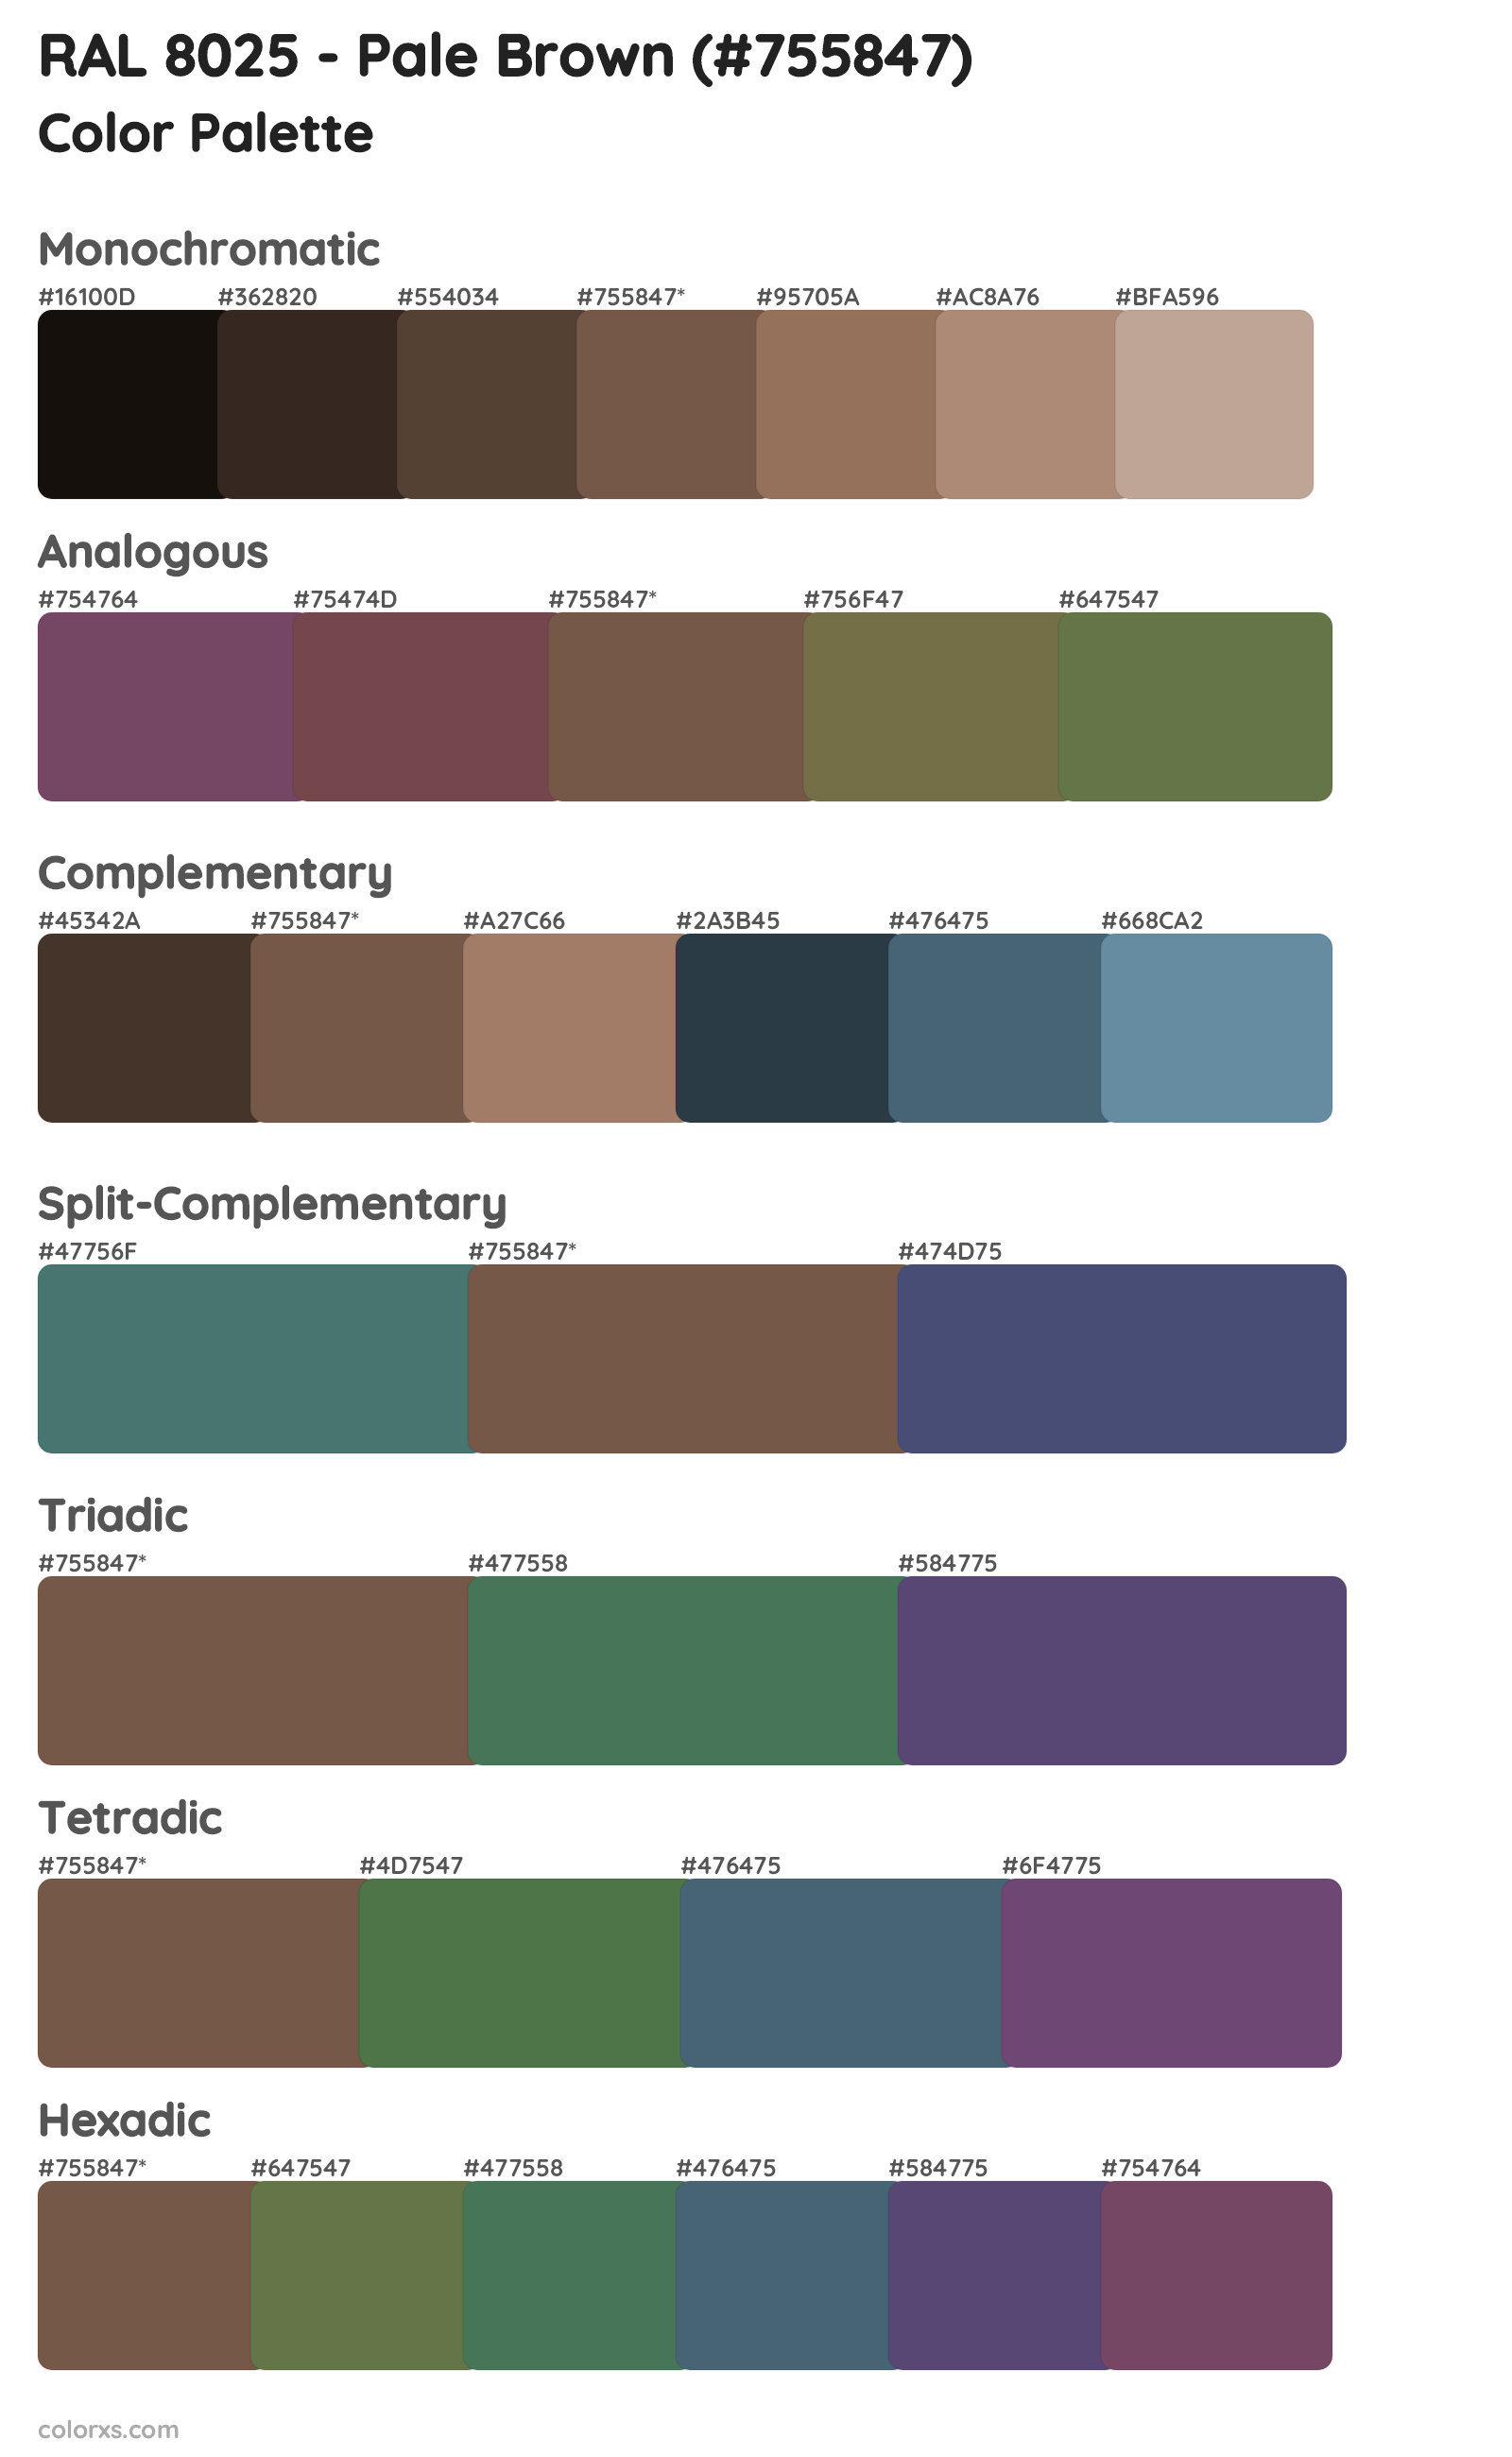 RAL 8025 - Pale Brown Color Scheme Palettes